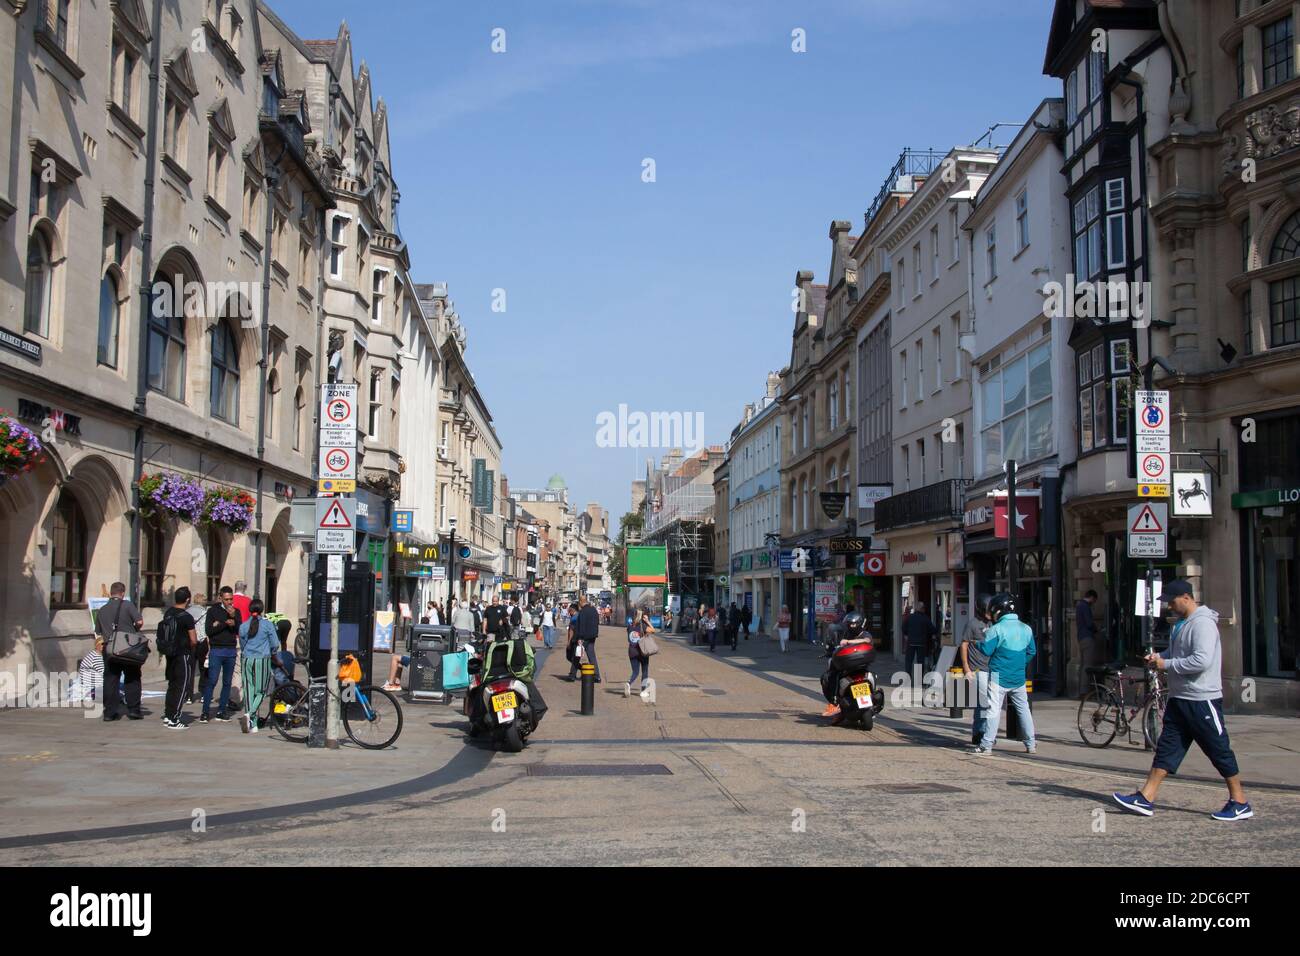 Vues sur Cornmarket Street dans le centre-ville d'Oxford au Royaume-Uni, prises le 15 septembre 2020 Banque D'Images